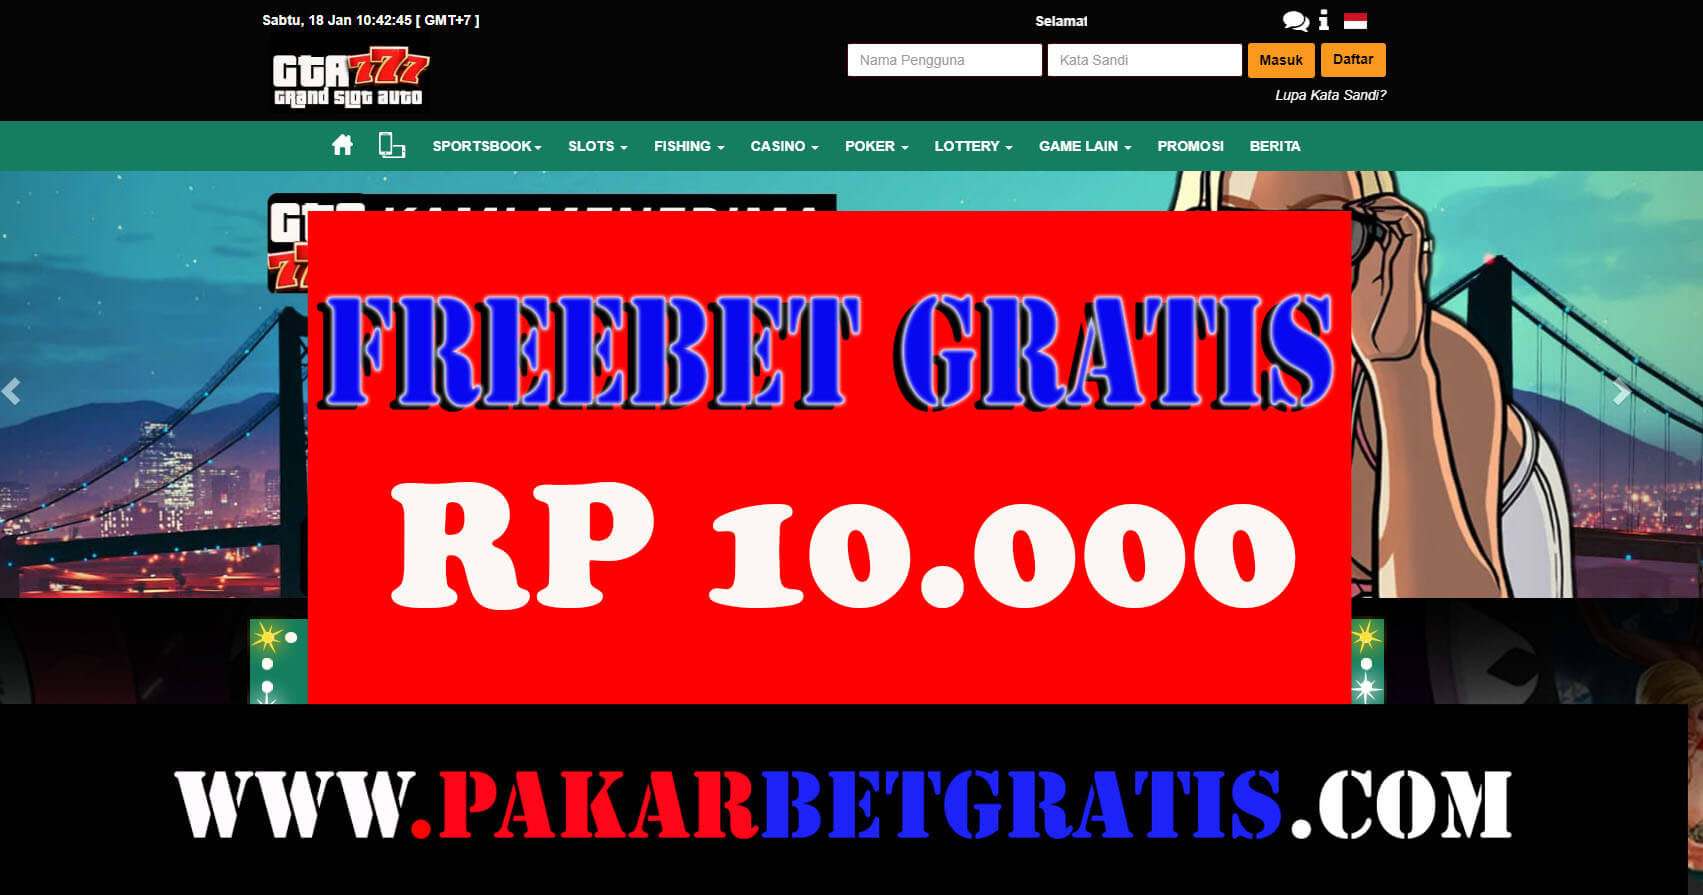 GTA777 Freebet Gratis Rp 10.000 Tanpa Deposit